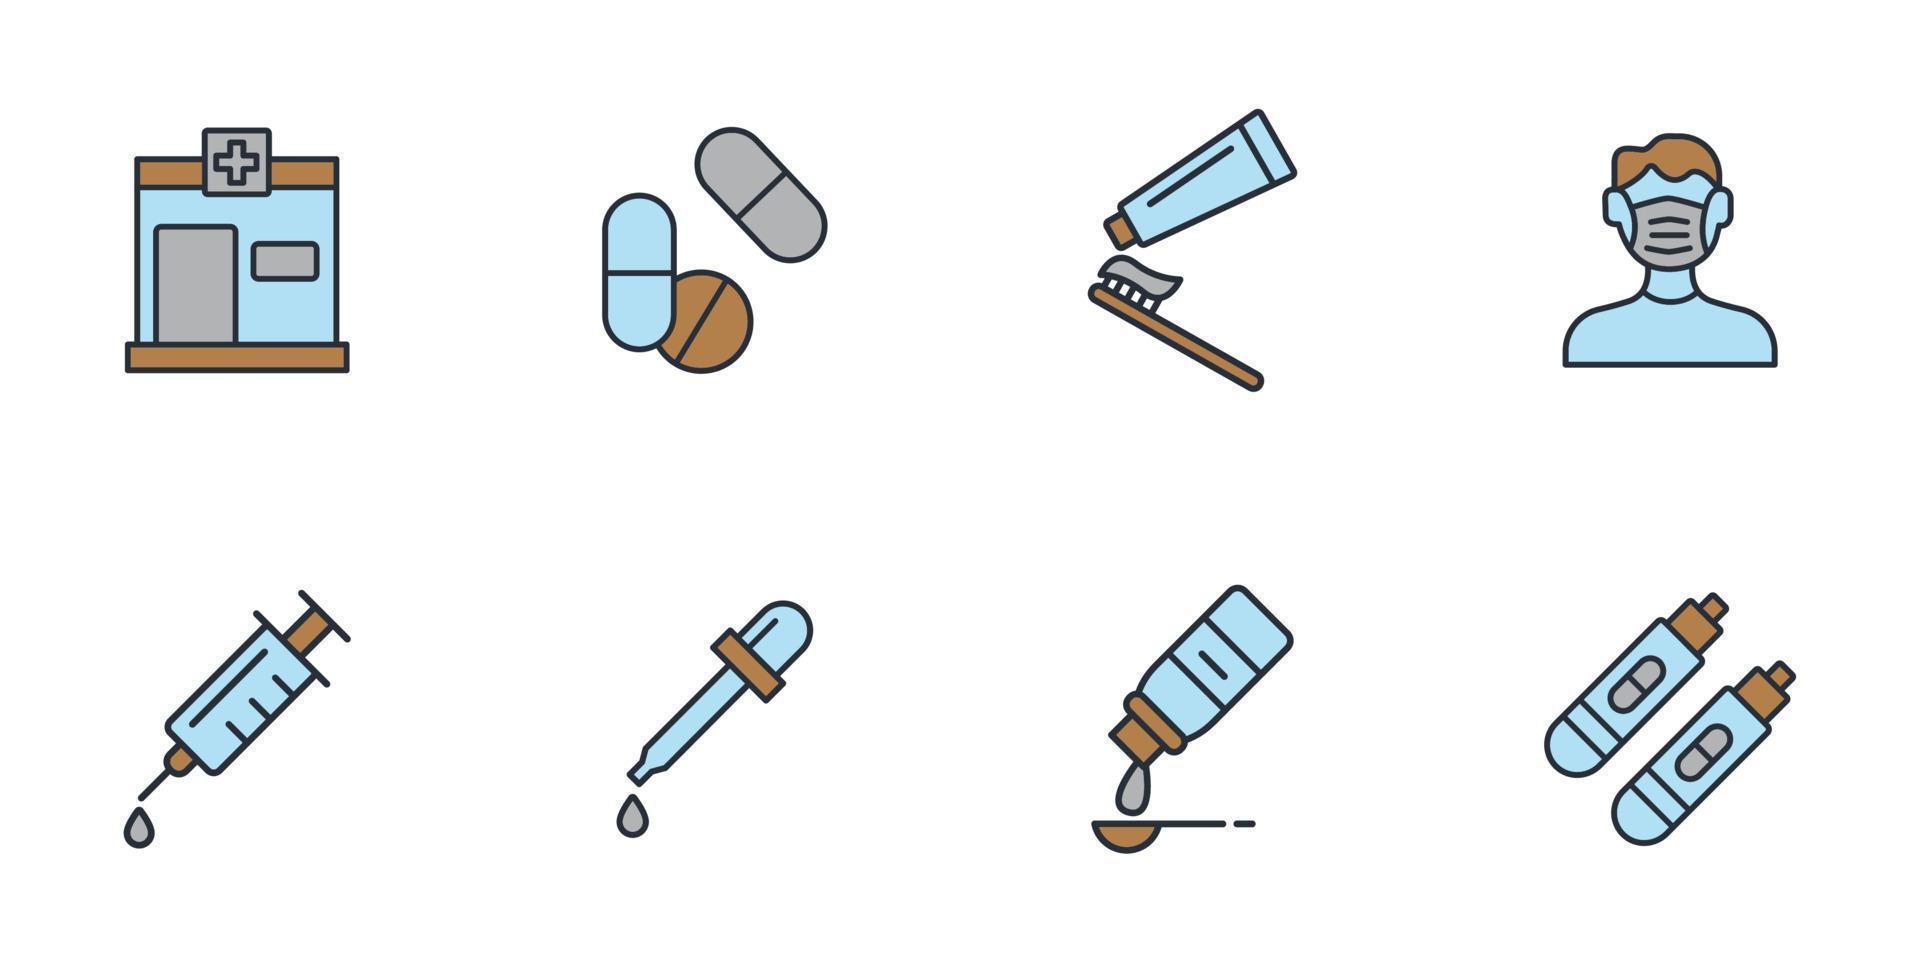 set di icone della farmacia. elementi di vettore di simbolo del pacchetto della farmacia per il web di infografica